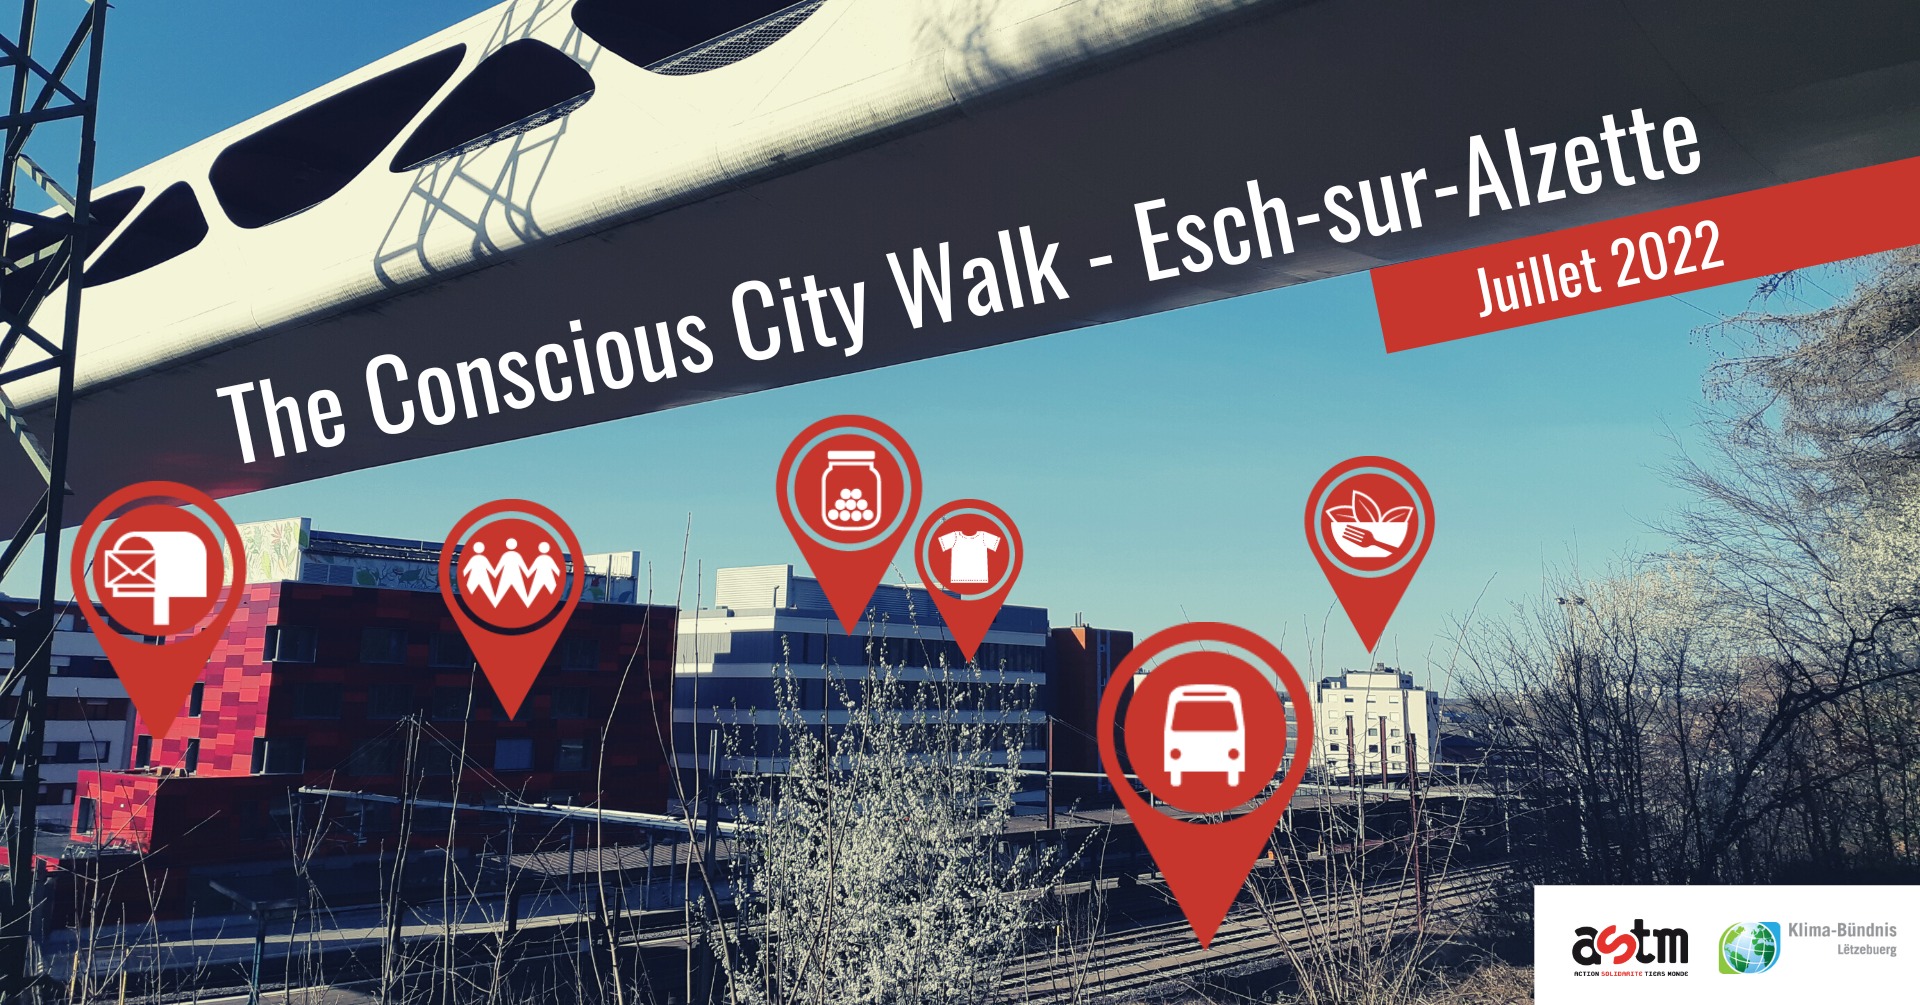 Les Conscious City Walks se poursuivent à Esch, capitale européenne de la culture